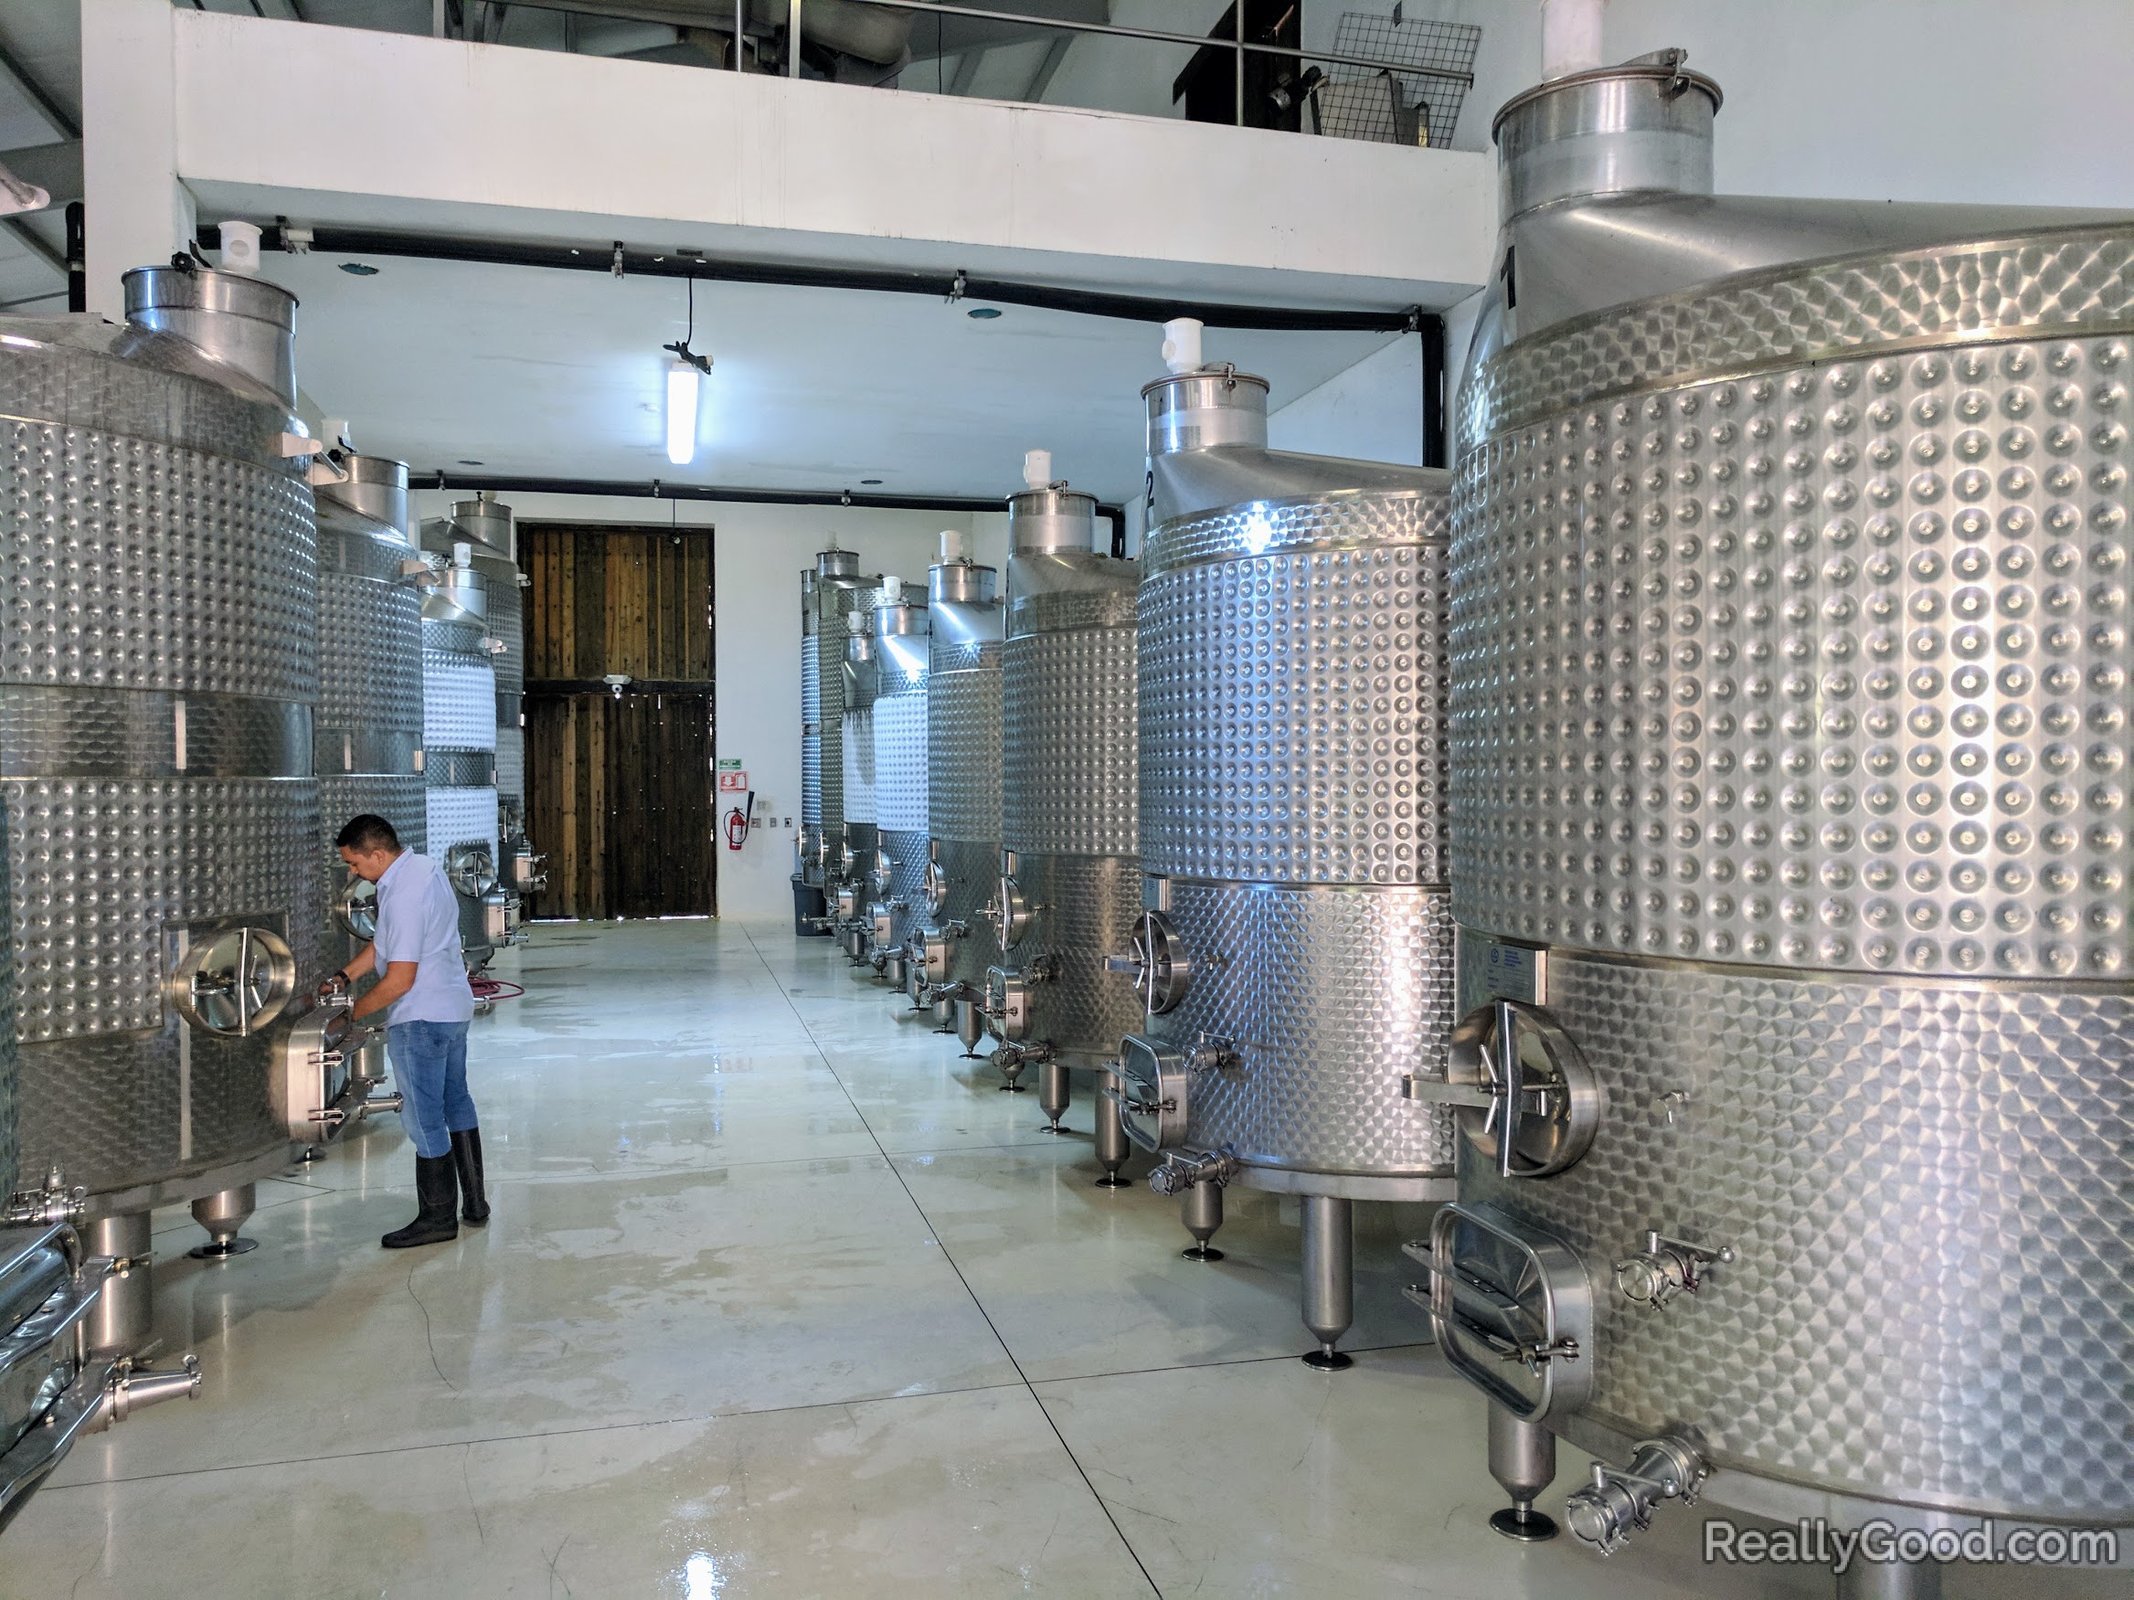 Stainless steel fermentation vessels